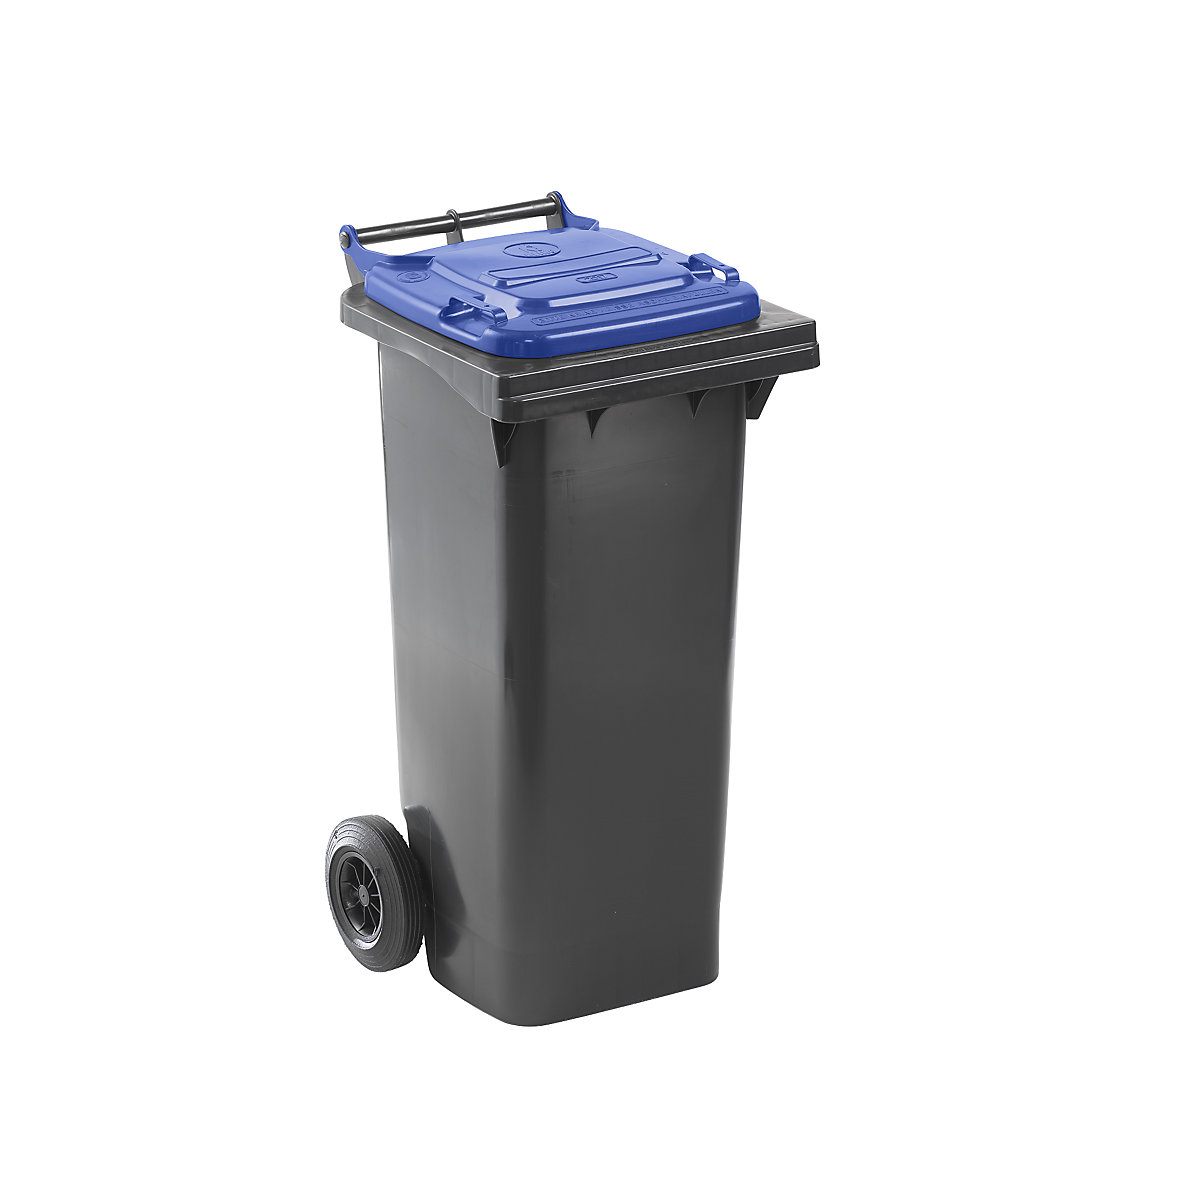 Contentor de lixo conforme a norma DIN EN 840, capacidade 80 l, LxAxP 448 x 975 x 530 mm, antracite, tampa azul